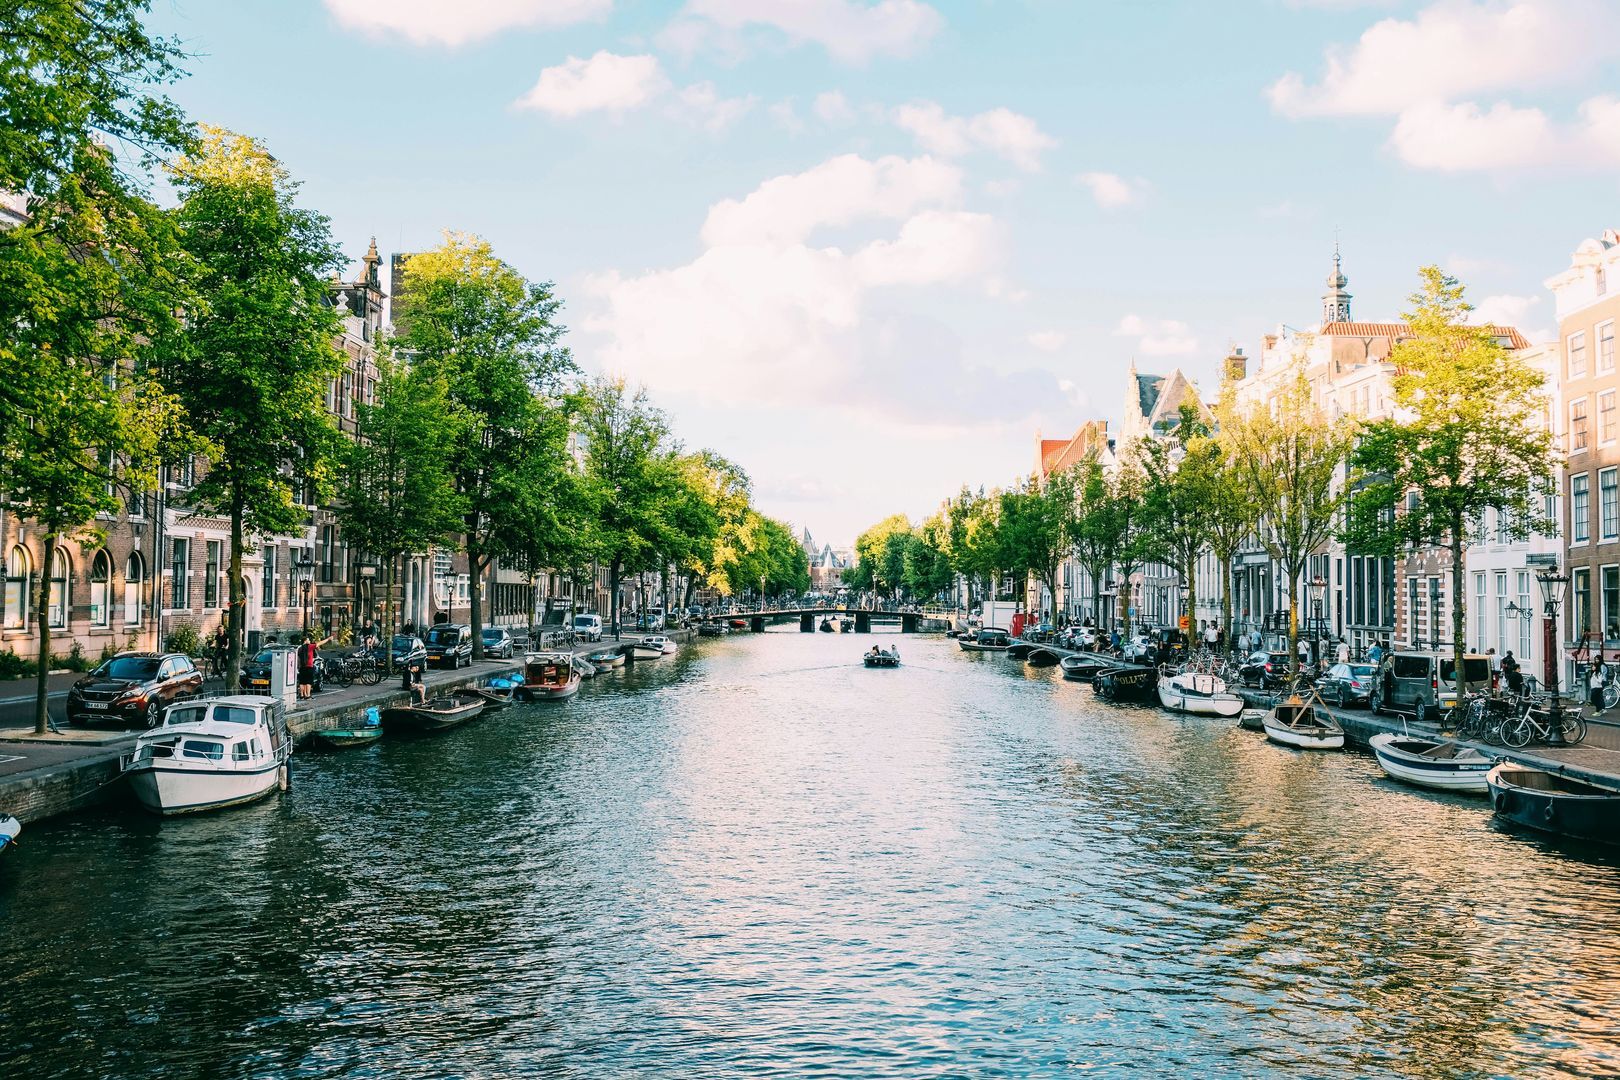 Hoe lang blijven expats doorgaans in Nederland?